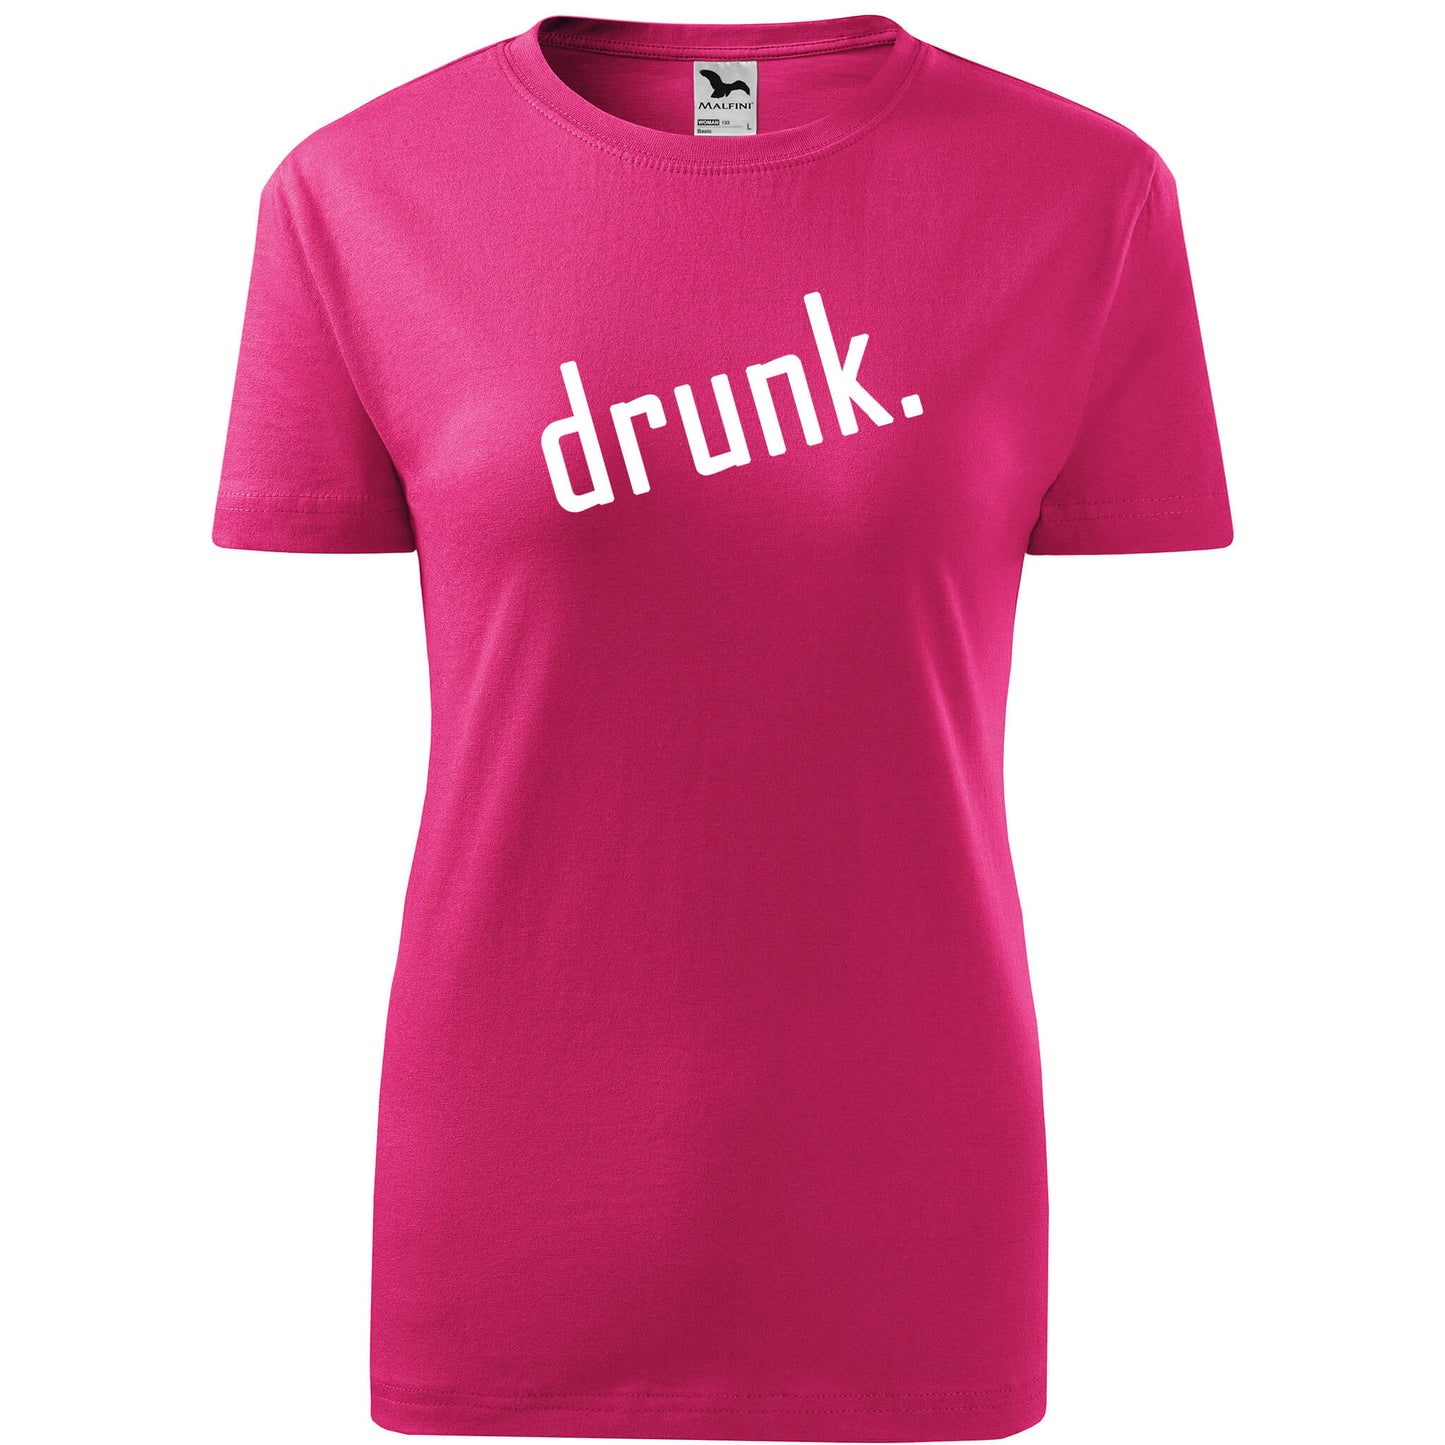 T-shirt - drunk. - rvdesignprint